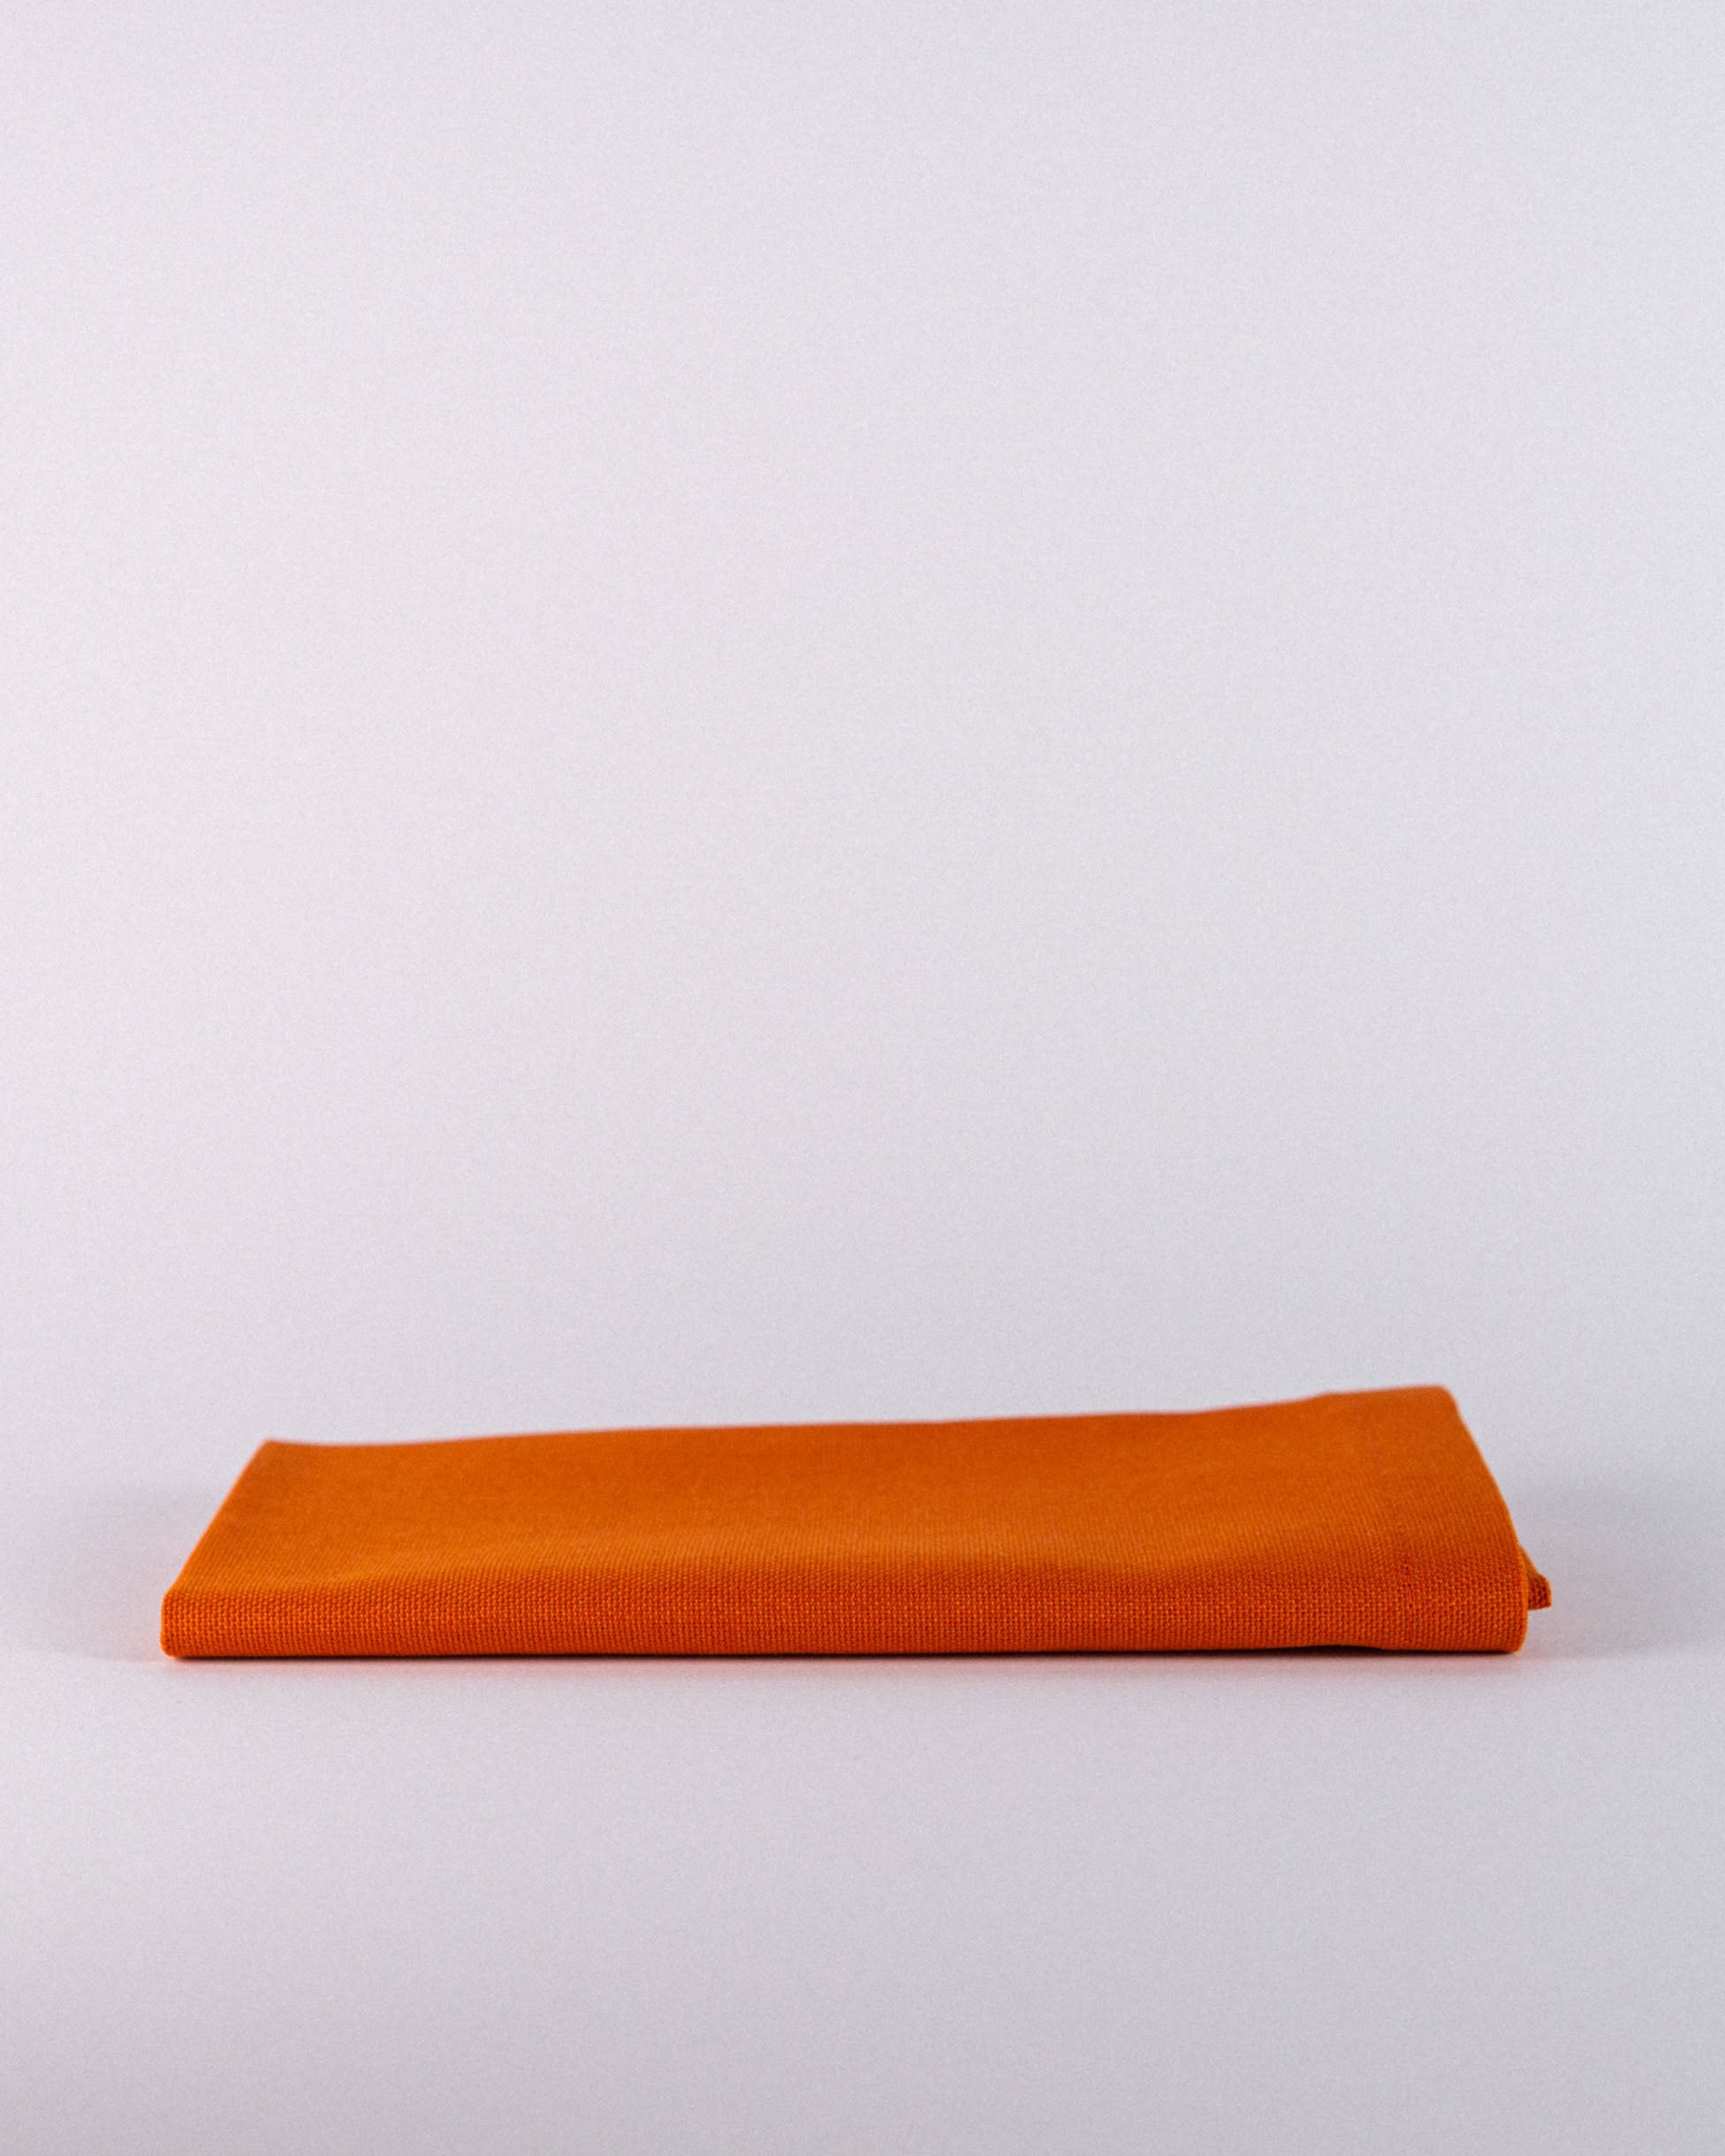 1 tovagliolo personalizzato | arancione Ennio